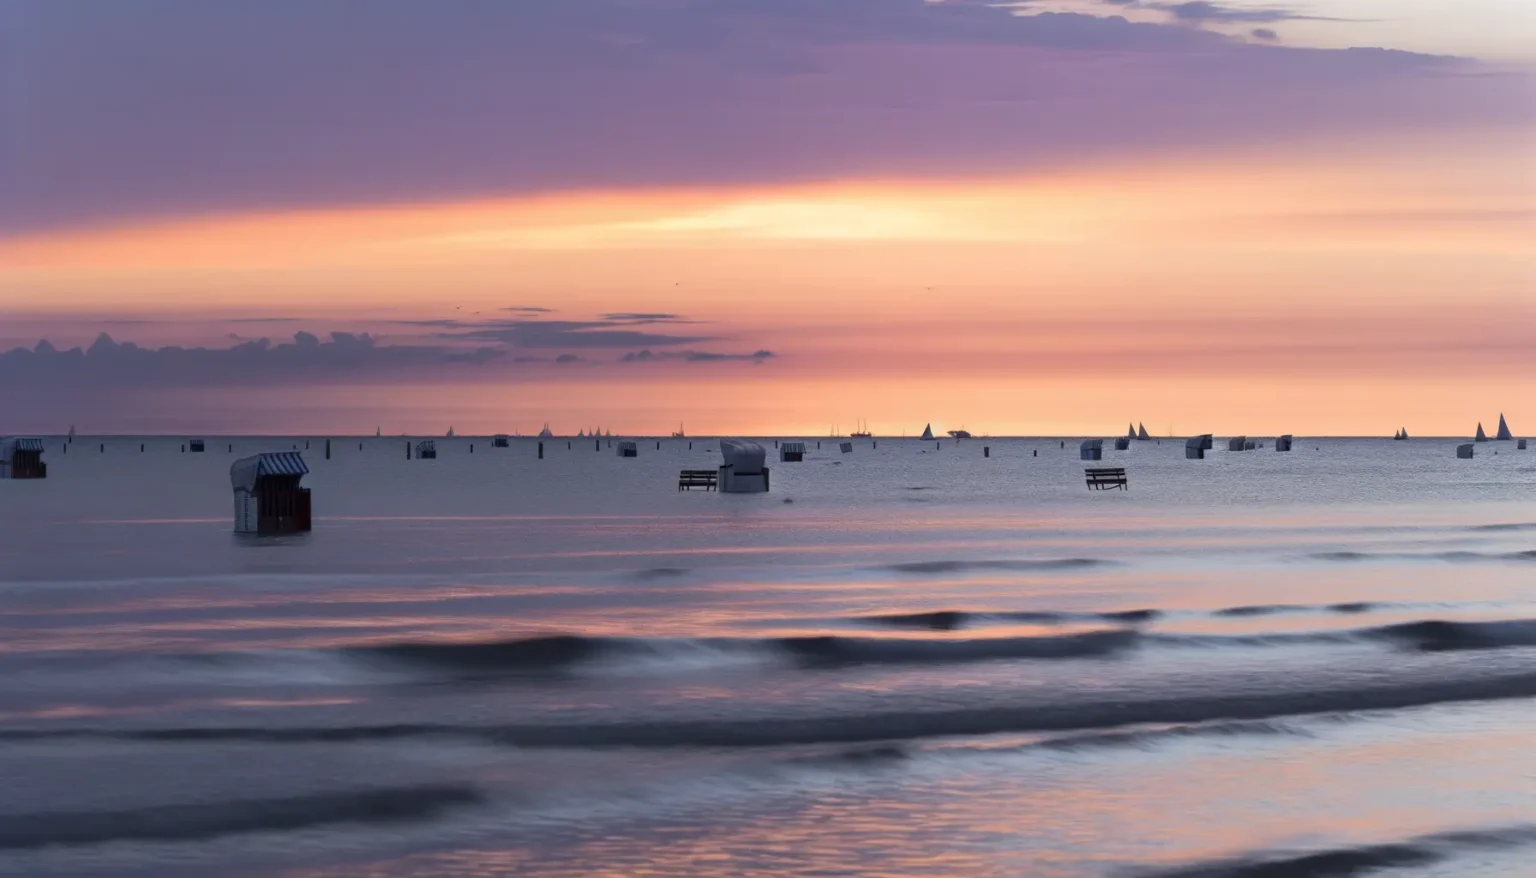 Ein friedvoller Sonnenuntergang am Meer mit einem pastellfarbenen Himmel in Rosa- und Orangetönen. Im ruhigen Wasser sind zahlreiche Segelboote in der Ferne zu erkennen und im Vordergrund einige überflutete Strandhütten.